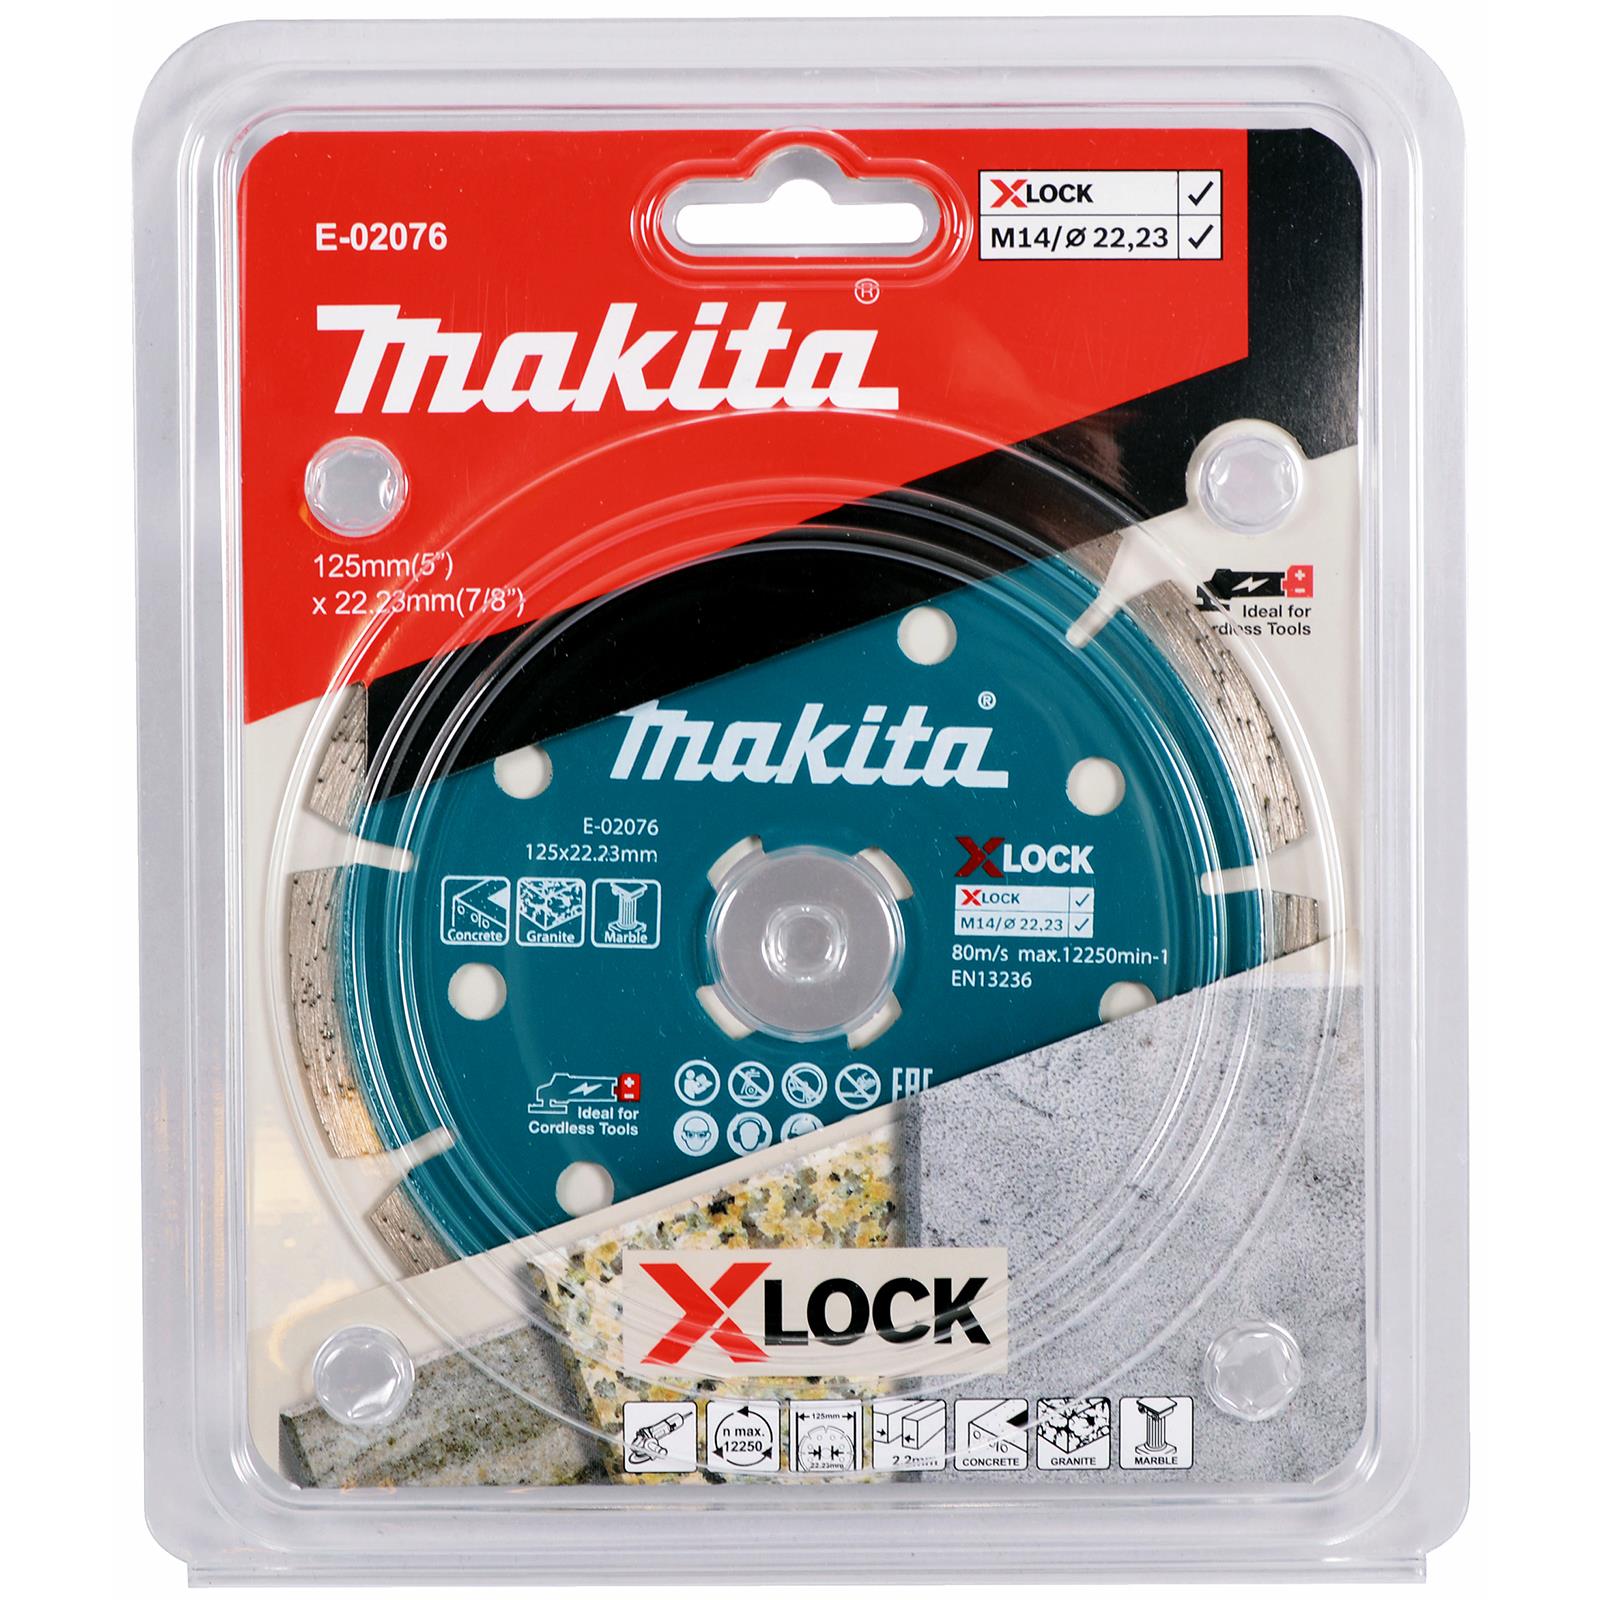 Makita Diamond Cutting Disc Wheel 125mm X-LOCK for Concrete Granite Marble E-02076